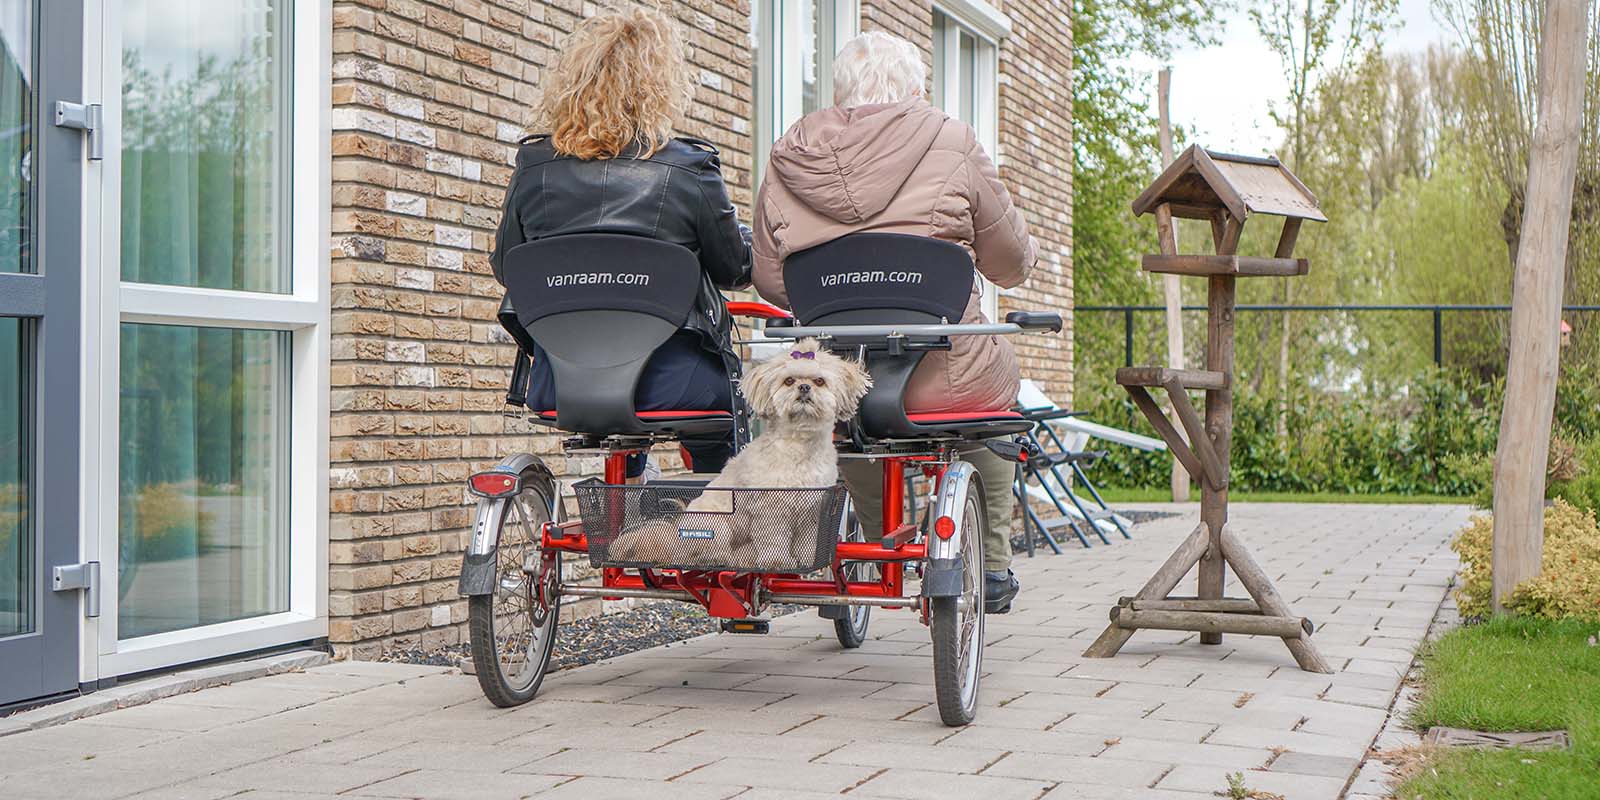 Een bewoner met dementie samen met haar dochter op een duofiets, van achter gefotografeerd terwijl ze wegrijden. Achter in het bakje zit een klein hondje dat de camera inkijkt.